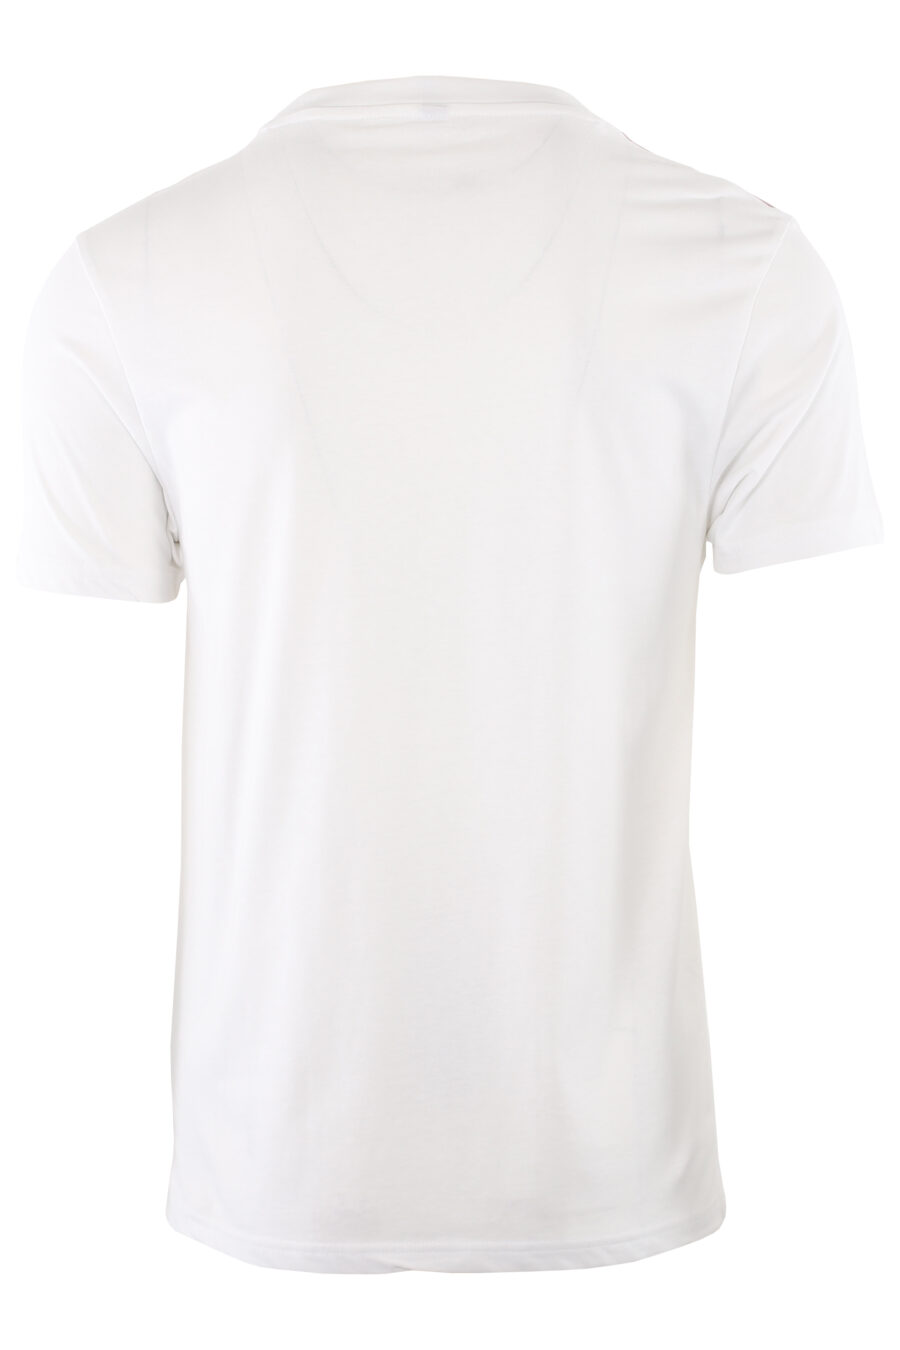 Weißes T-Shirt mit Logo auf der Schulterpartie - IMG 7414